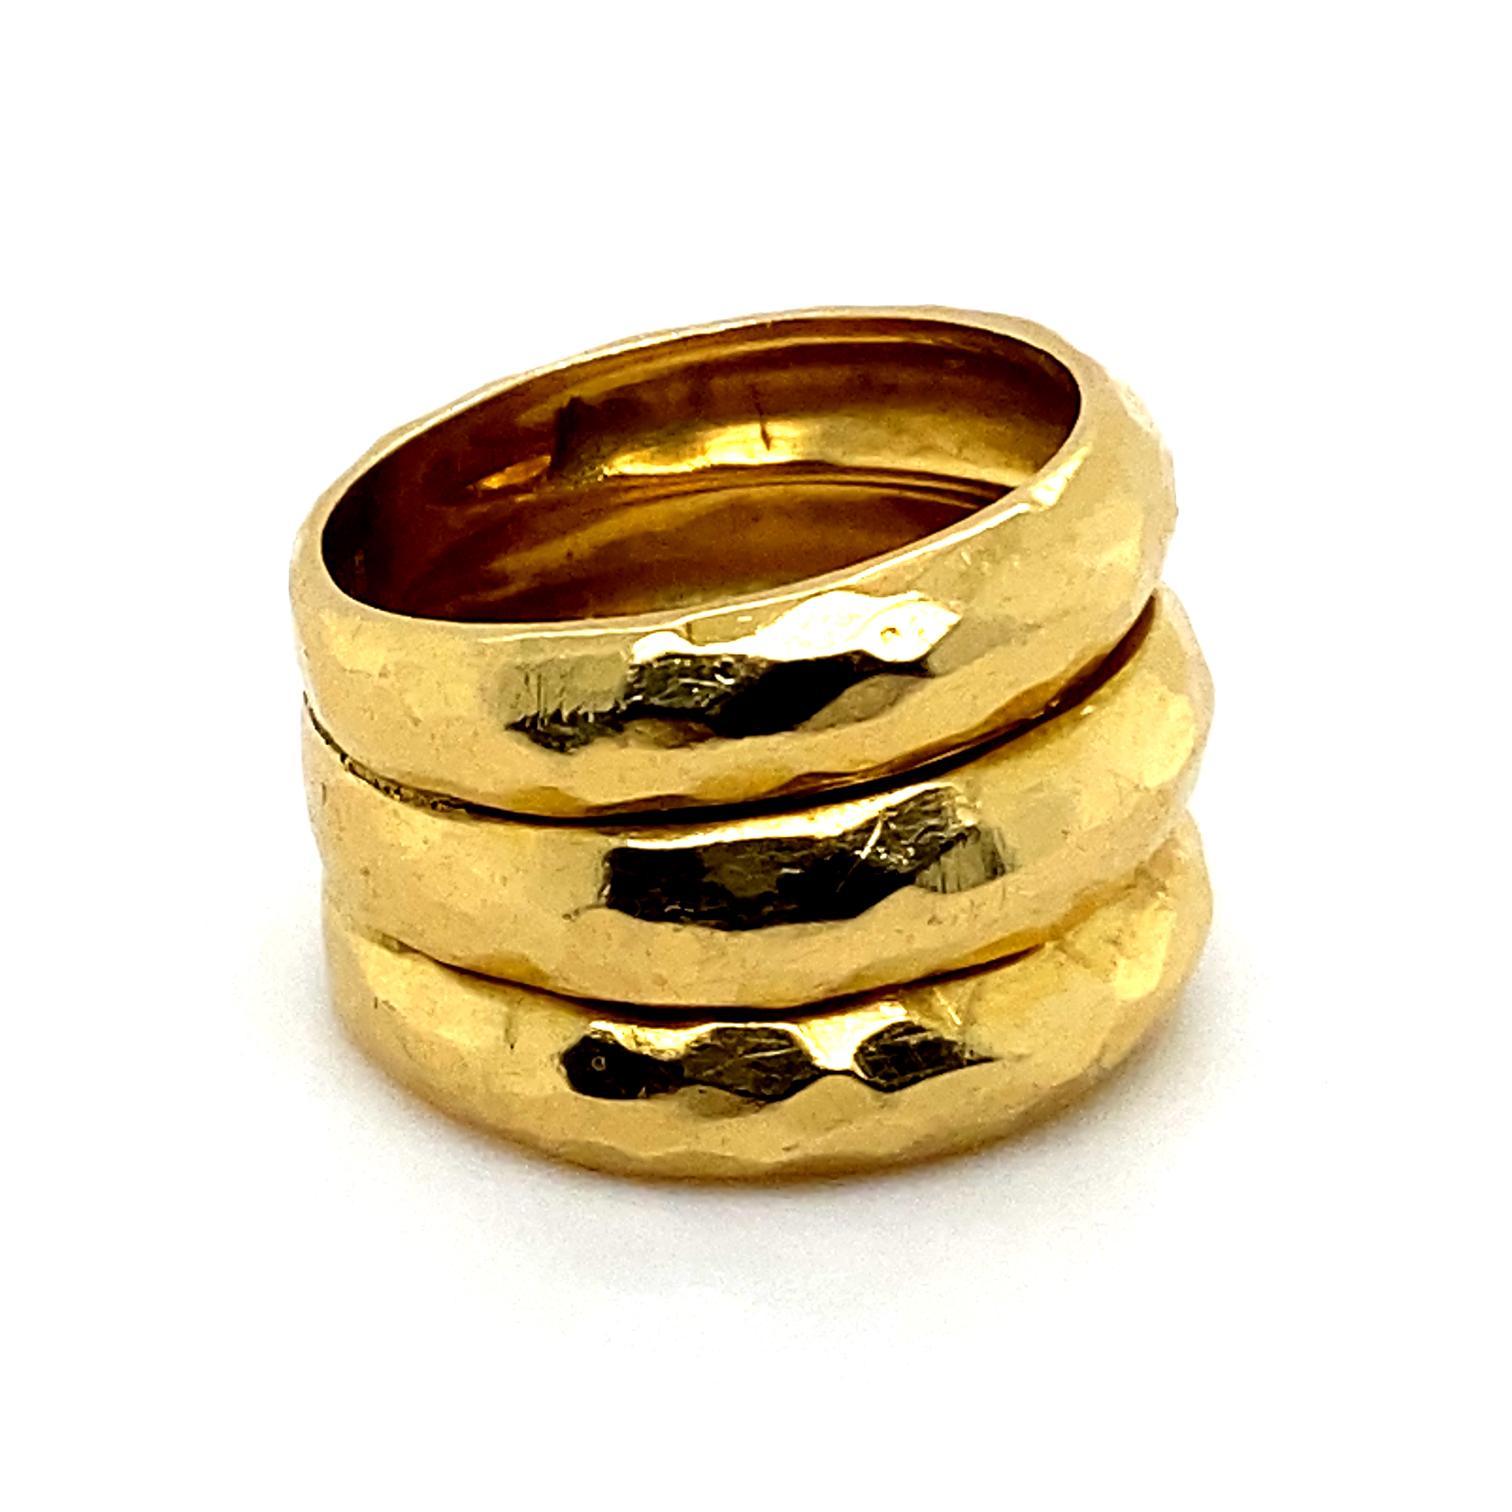 Dreireihiger Vintage-Ring aus 18 Karat Gelbgold

Dieser Ring besteht aus drei übereinander gestapelten Ringen, die in einem kühnen und ungewöhnlichen Design miteinander verschmolzen sind.
Jeder Ring weist gehämmerte und strukturierte Details auf der